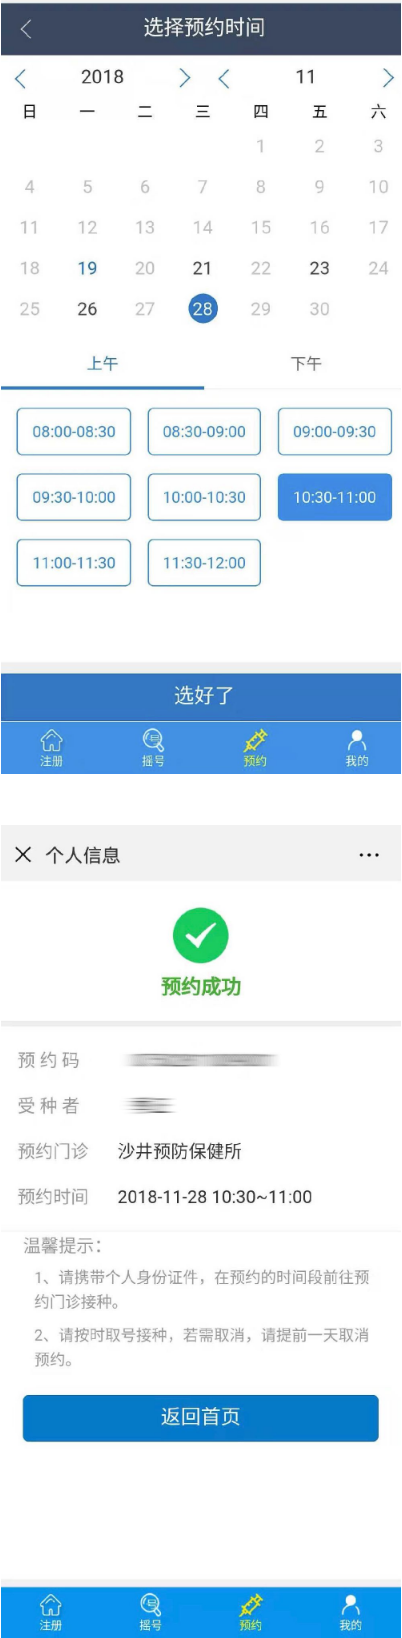 2020深圳福田区HPV九价疫苗申请指南